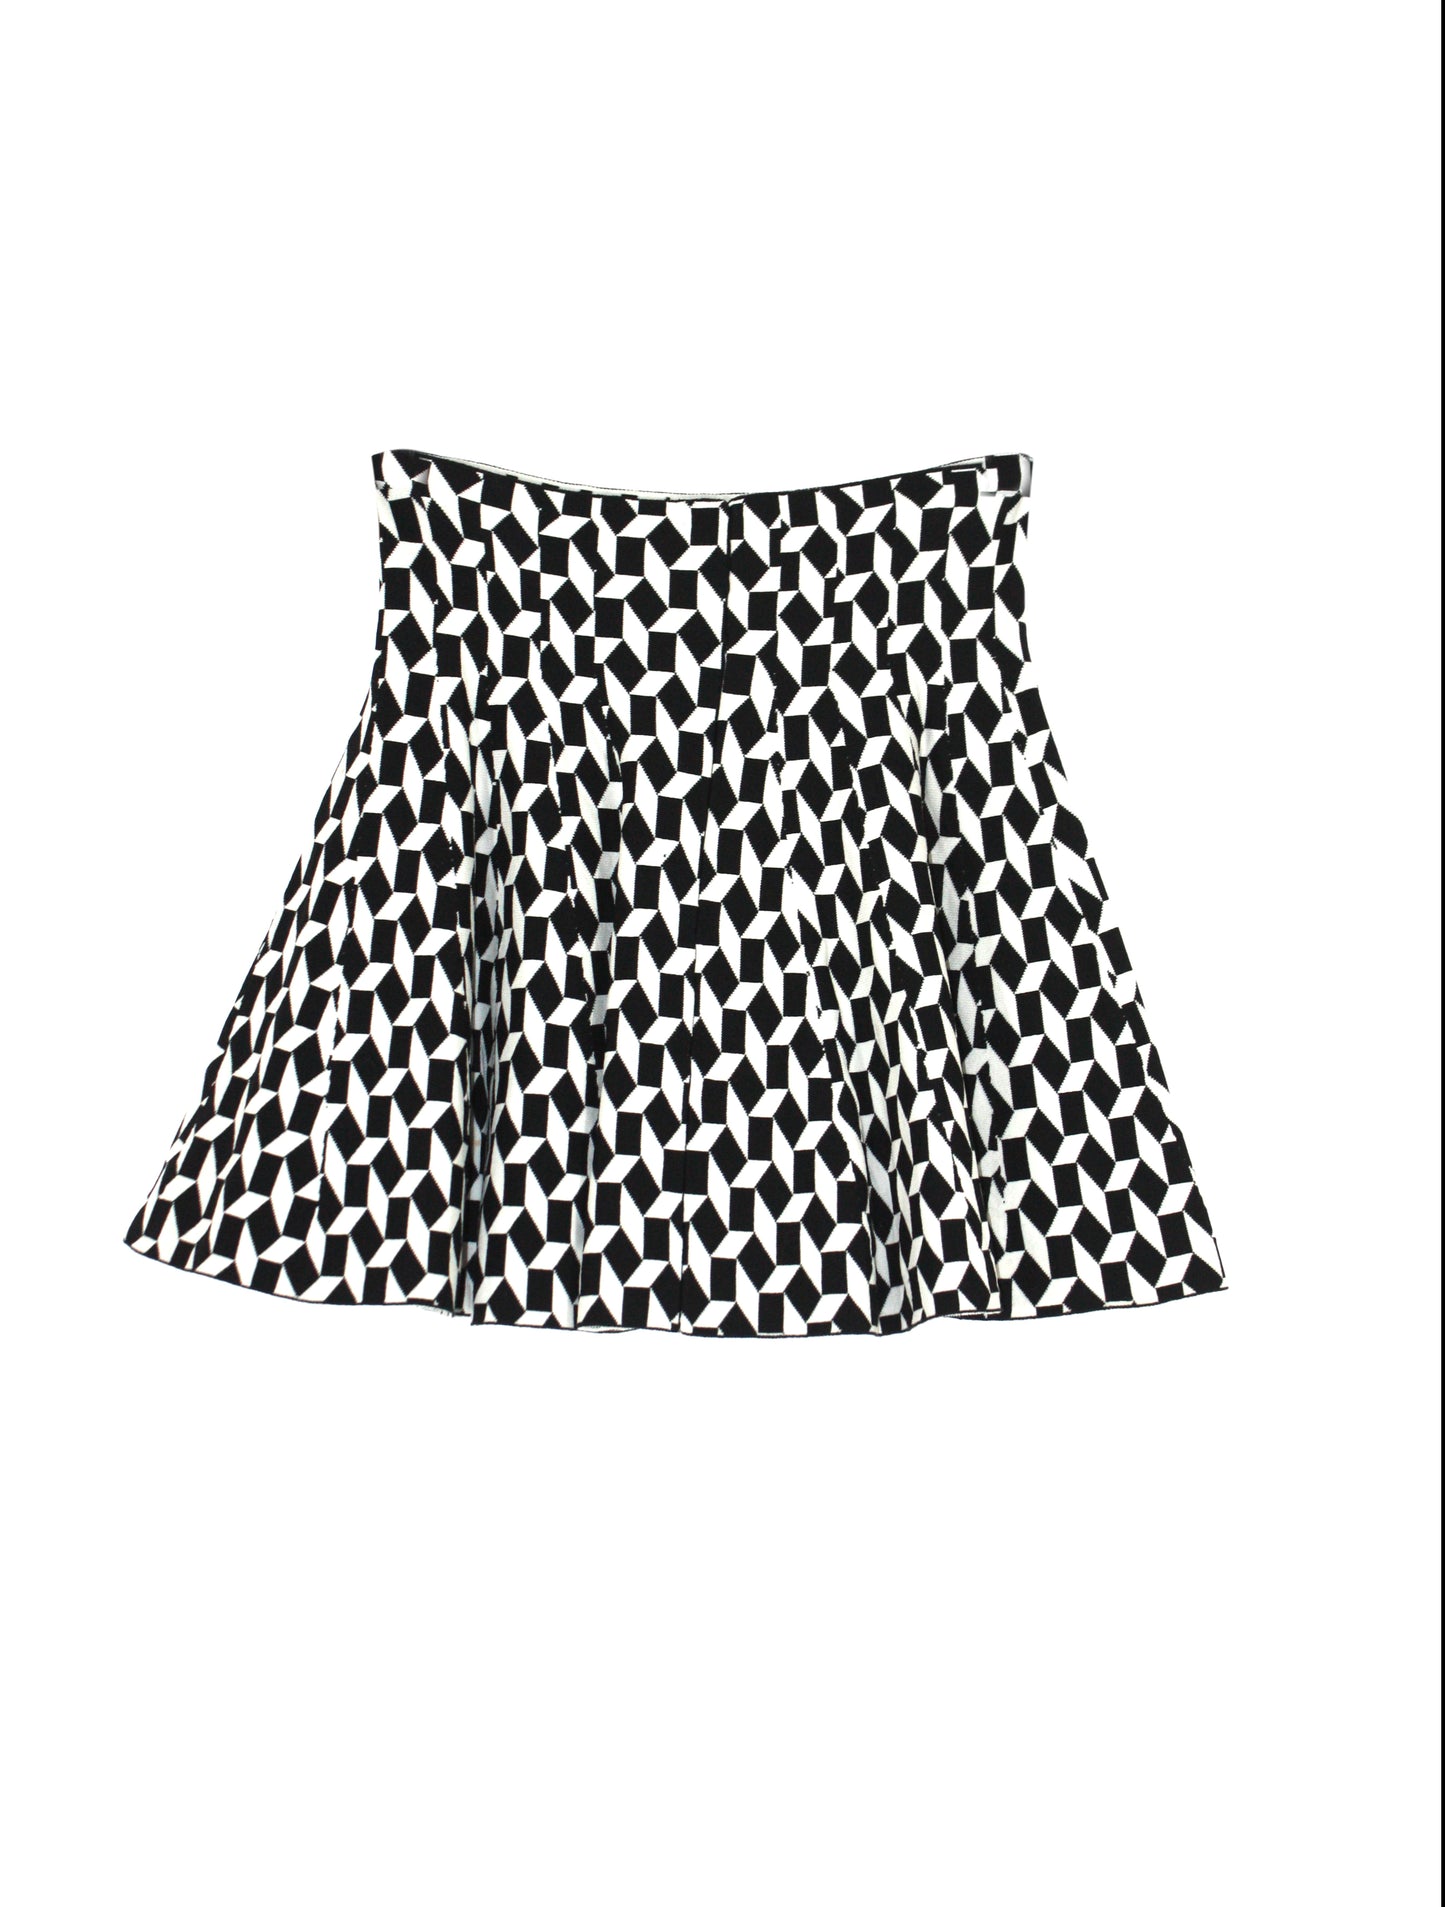 Kucho Black & White Knitted Mini Skirt - pre-loved